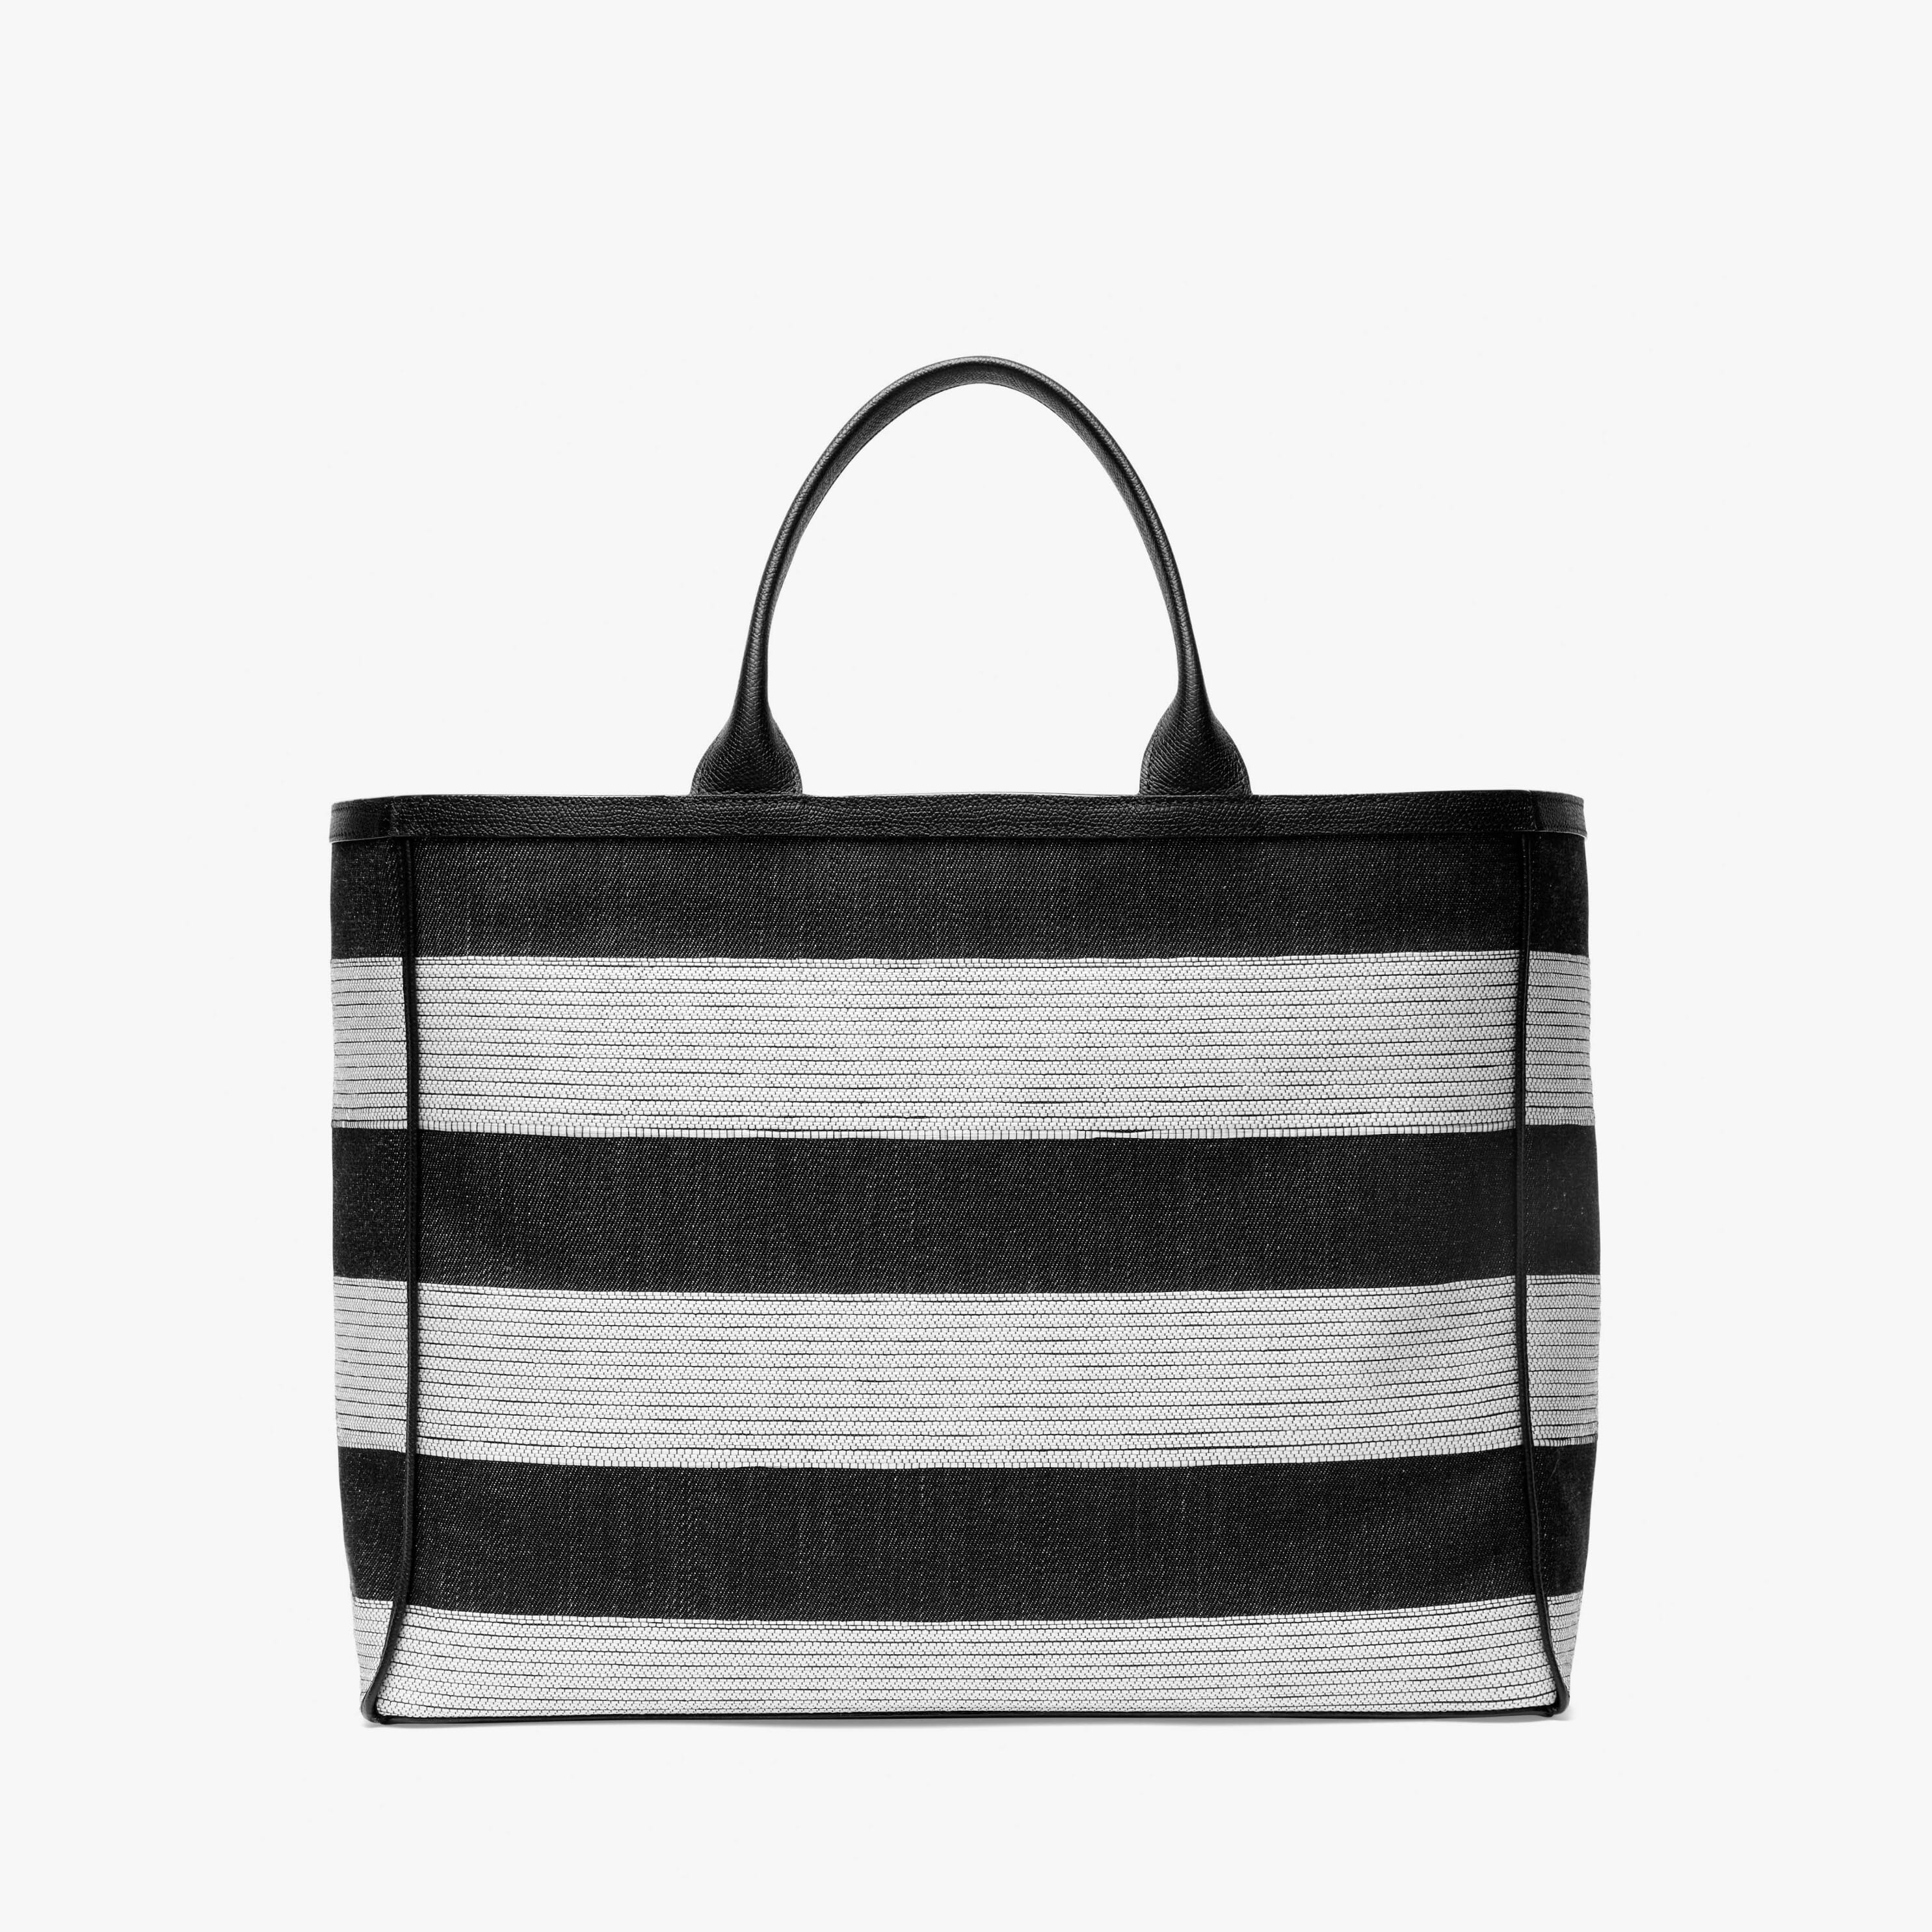 Tote Bag Denim Stripe Large - Black/Pergamena White - Tessuto Denim/Vitello VS - Valextra - 6